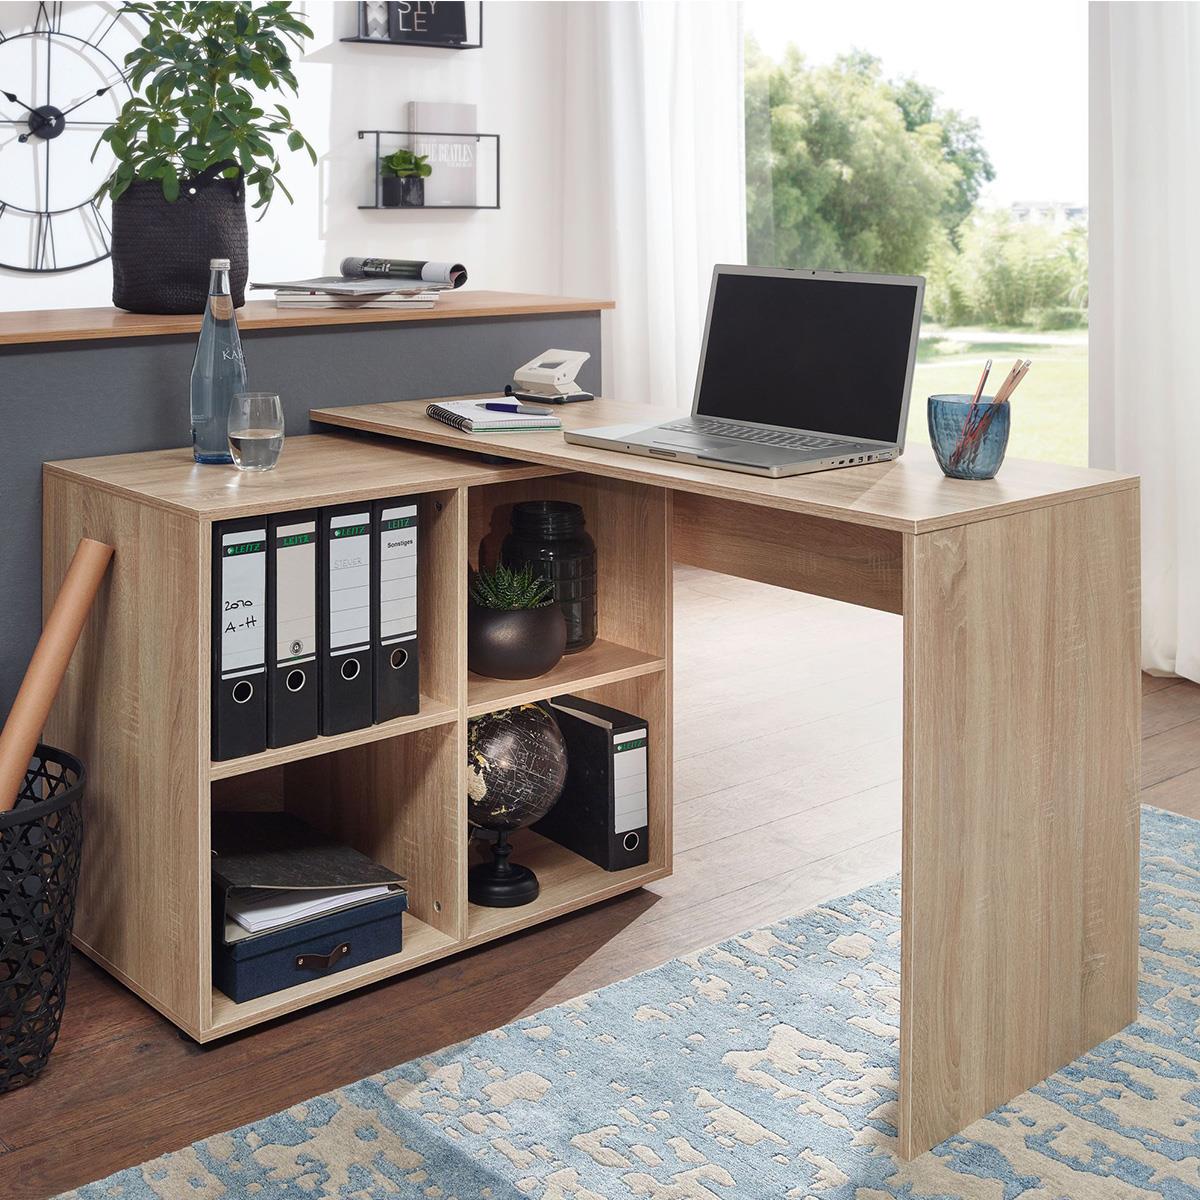 Schreibtisch SAKURA, Abmessungen 117x88x75 cm, modernes Design in L-Form, schwenkbar, Holz, Farbe Eiche